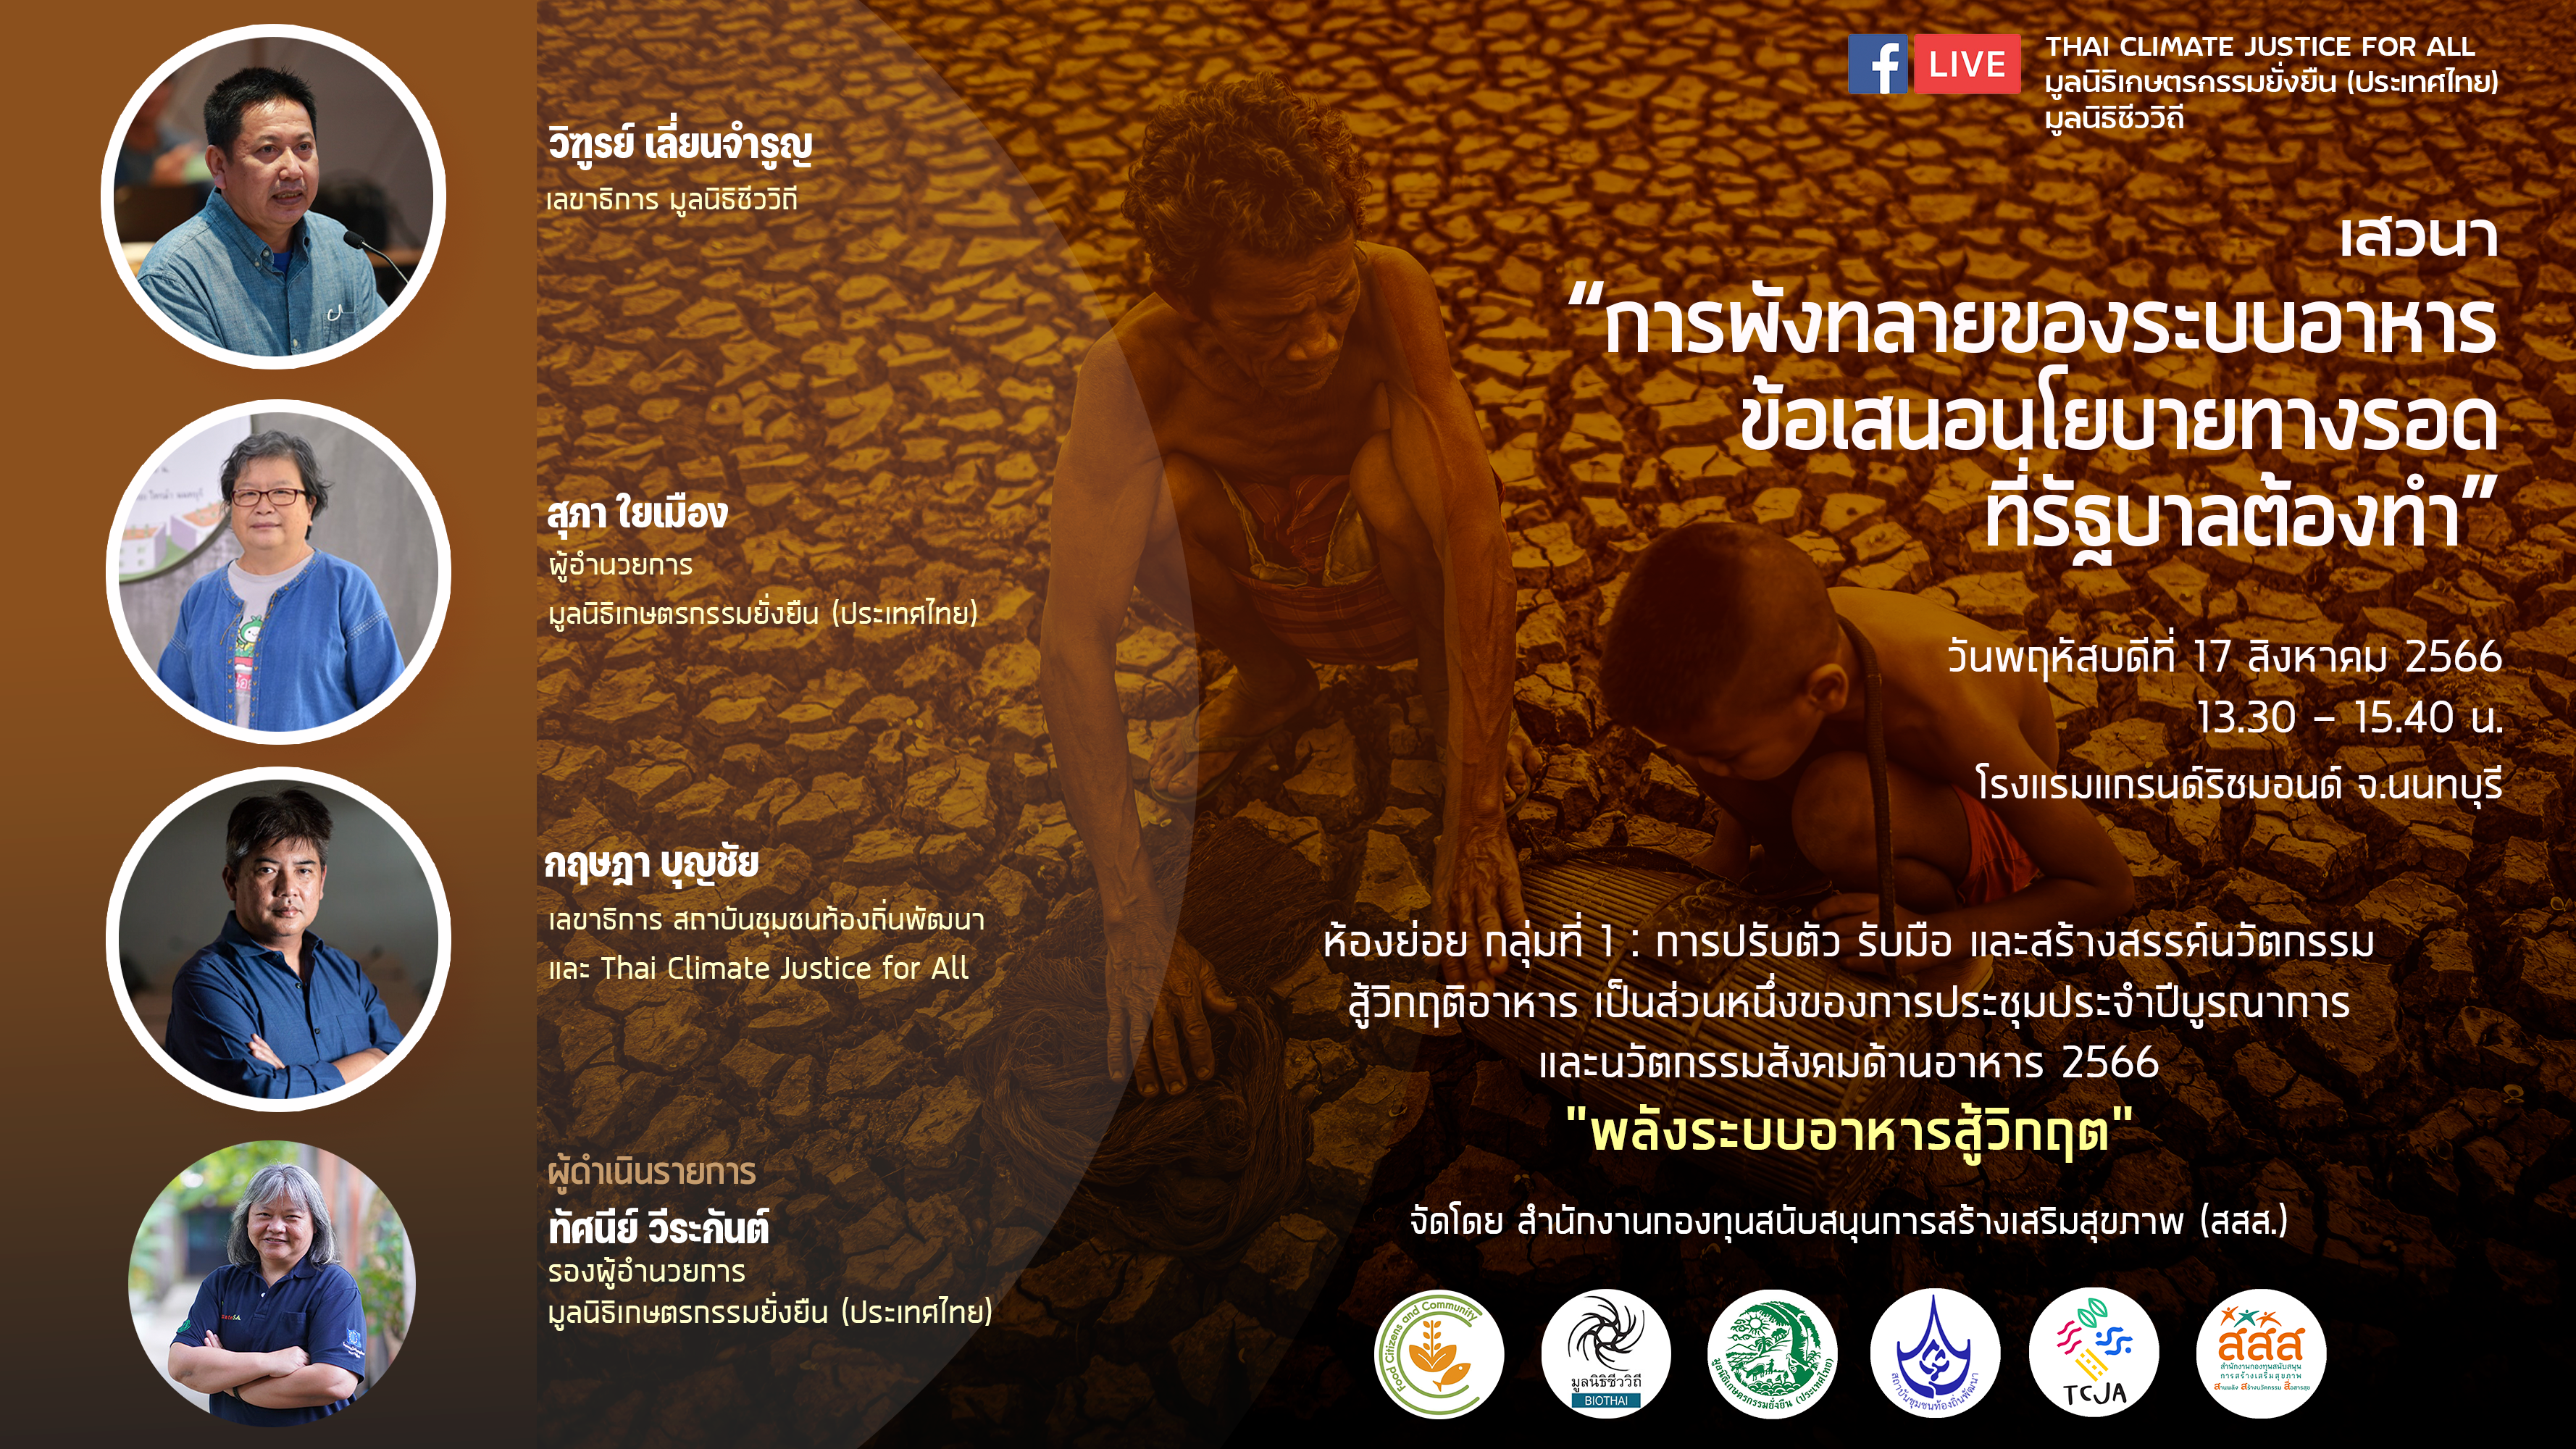 มูลนิธิชีววิถี-BIOTHAI, มูลนิธิเกษตรกรรมยั่งยืน (ประเทศไทย), Thai Climate Justice for All, สถาบันชุมชนท้องถิ่นพัฒนา